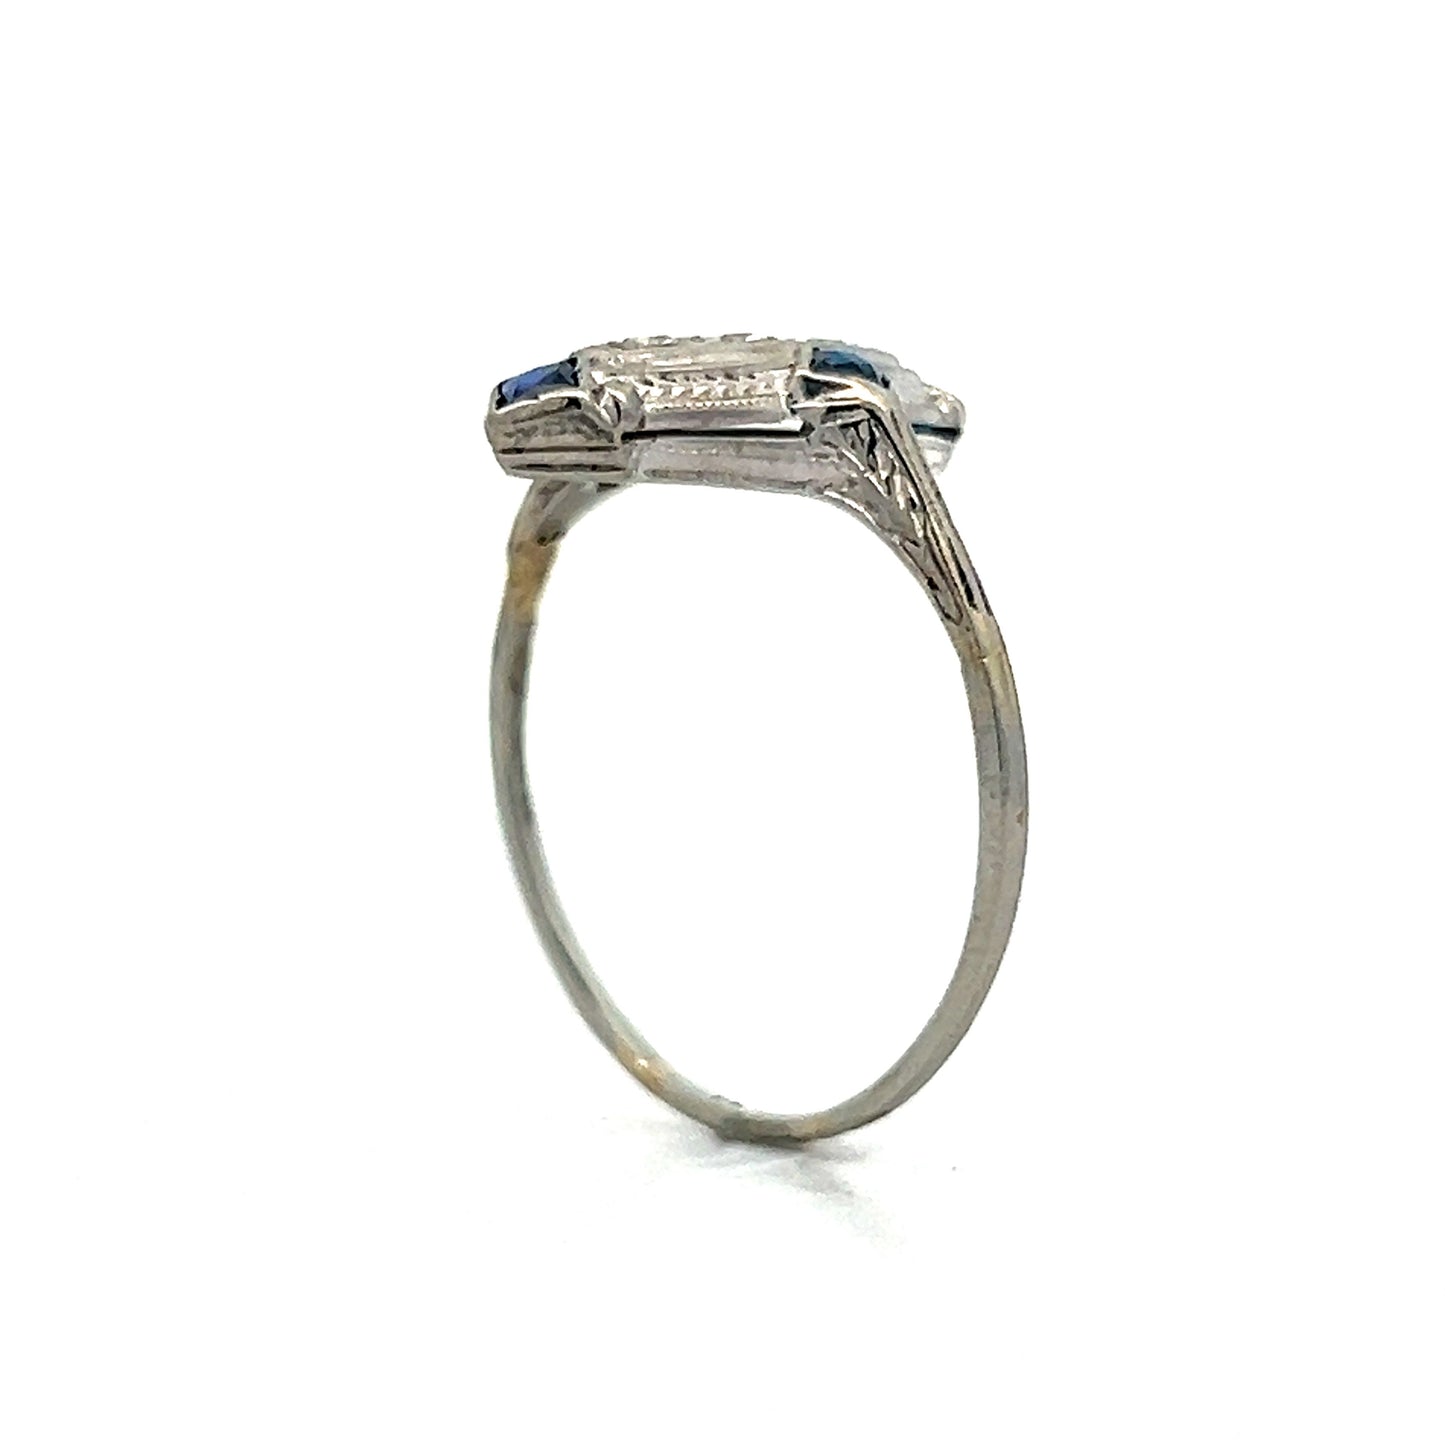 Vintage Art Deco Diamond Navette Ring in 14k White Gold